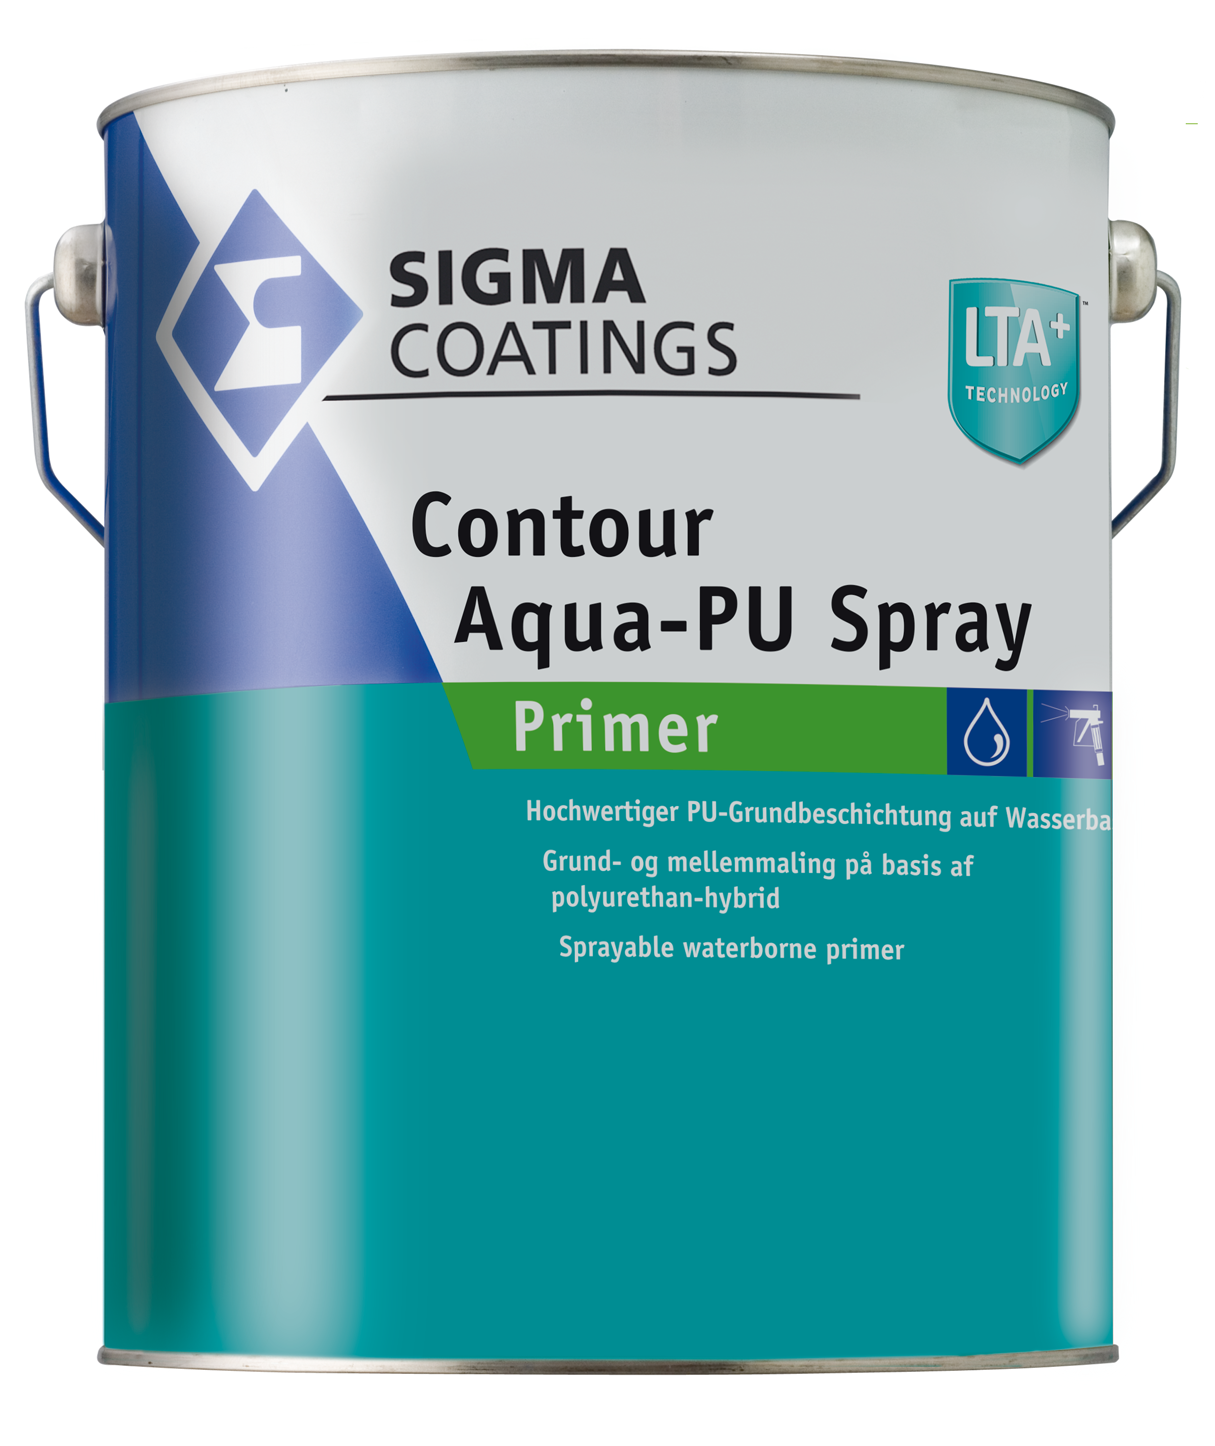 Contour Aqua-PU Spray